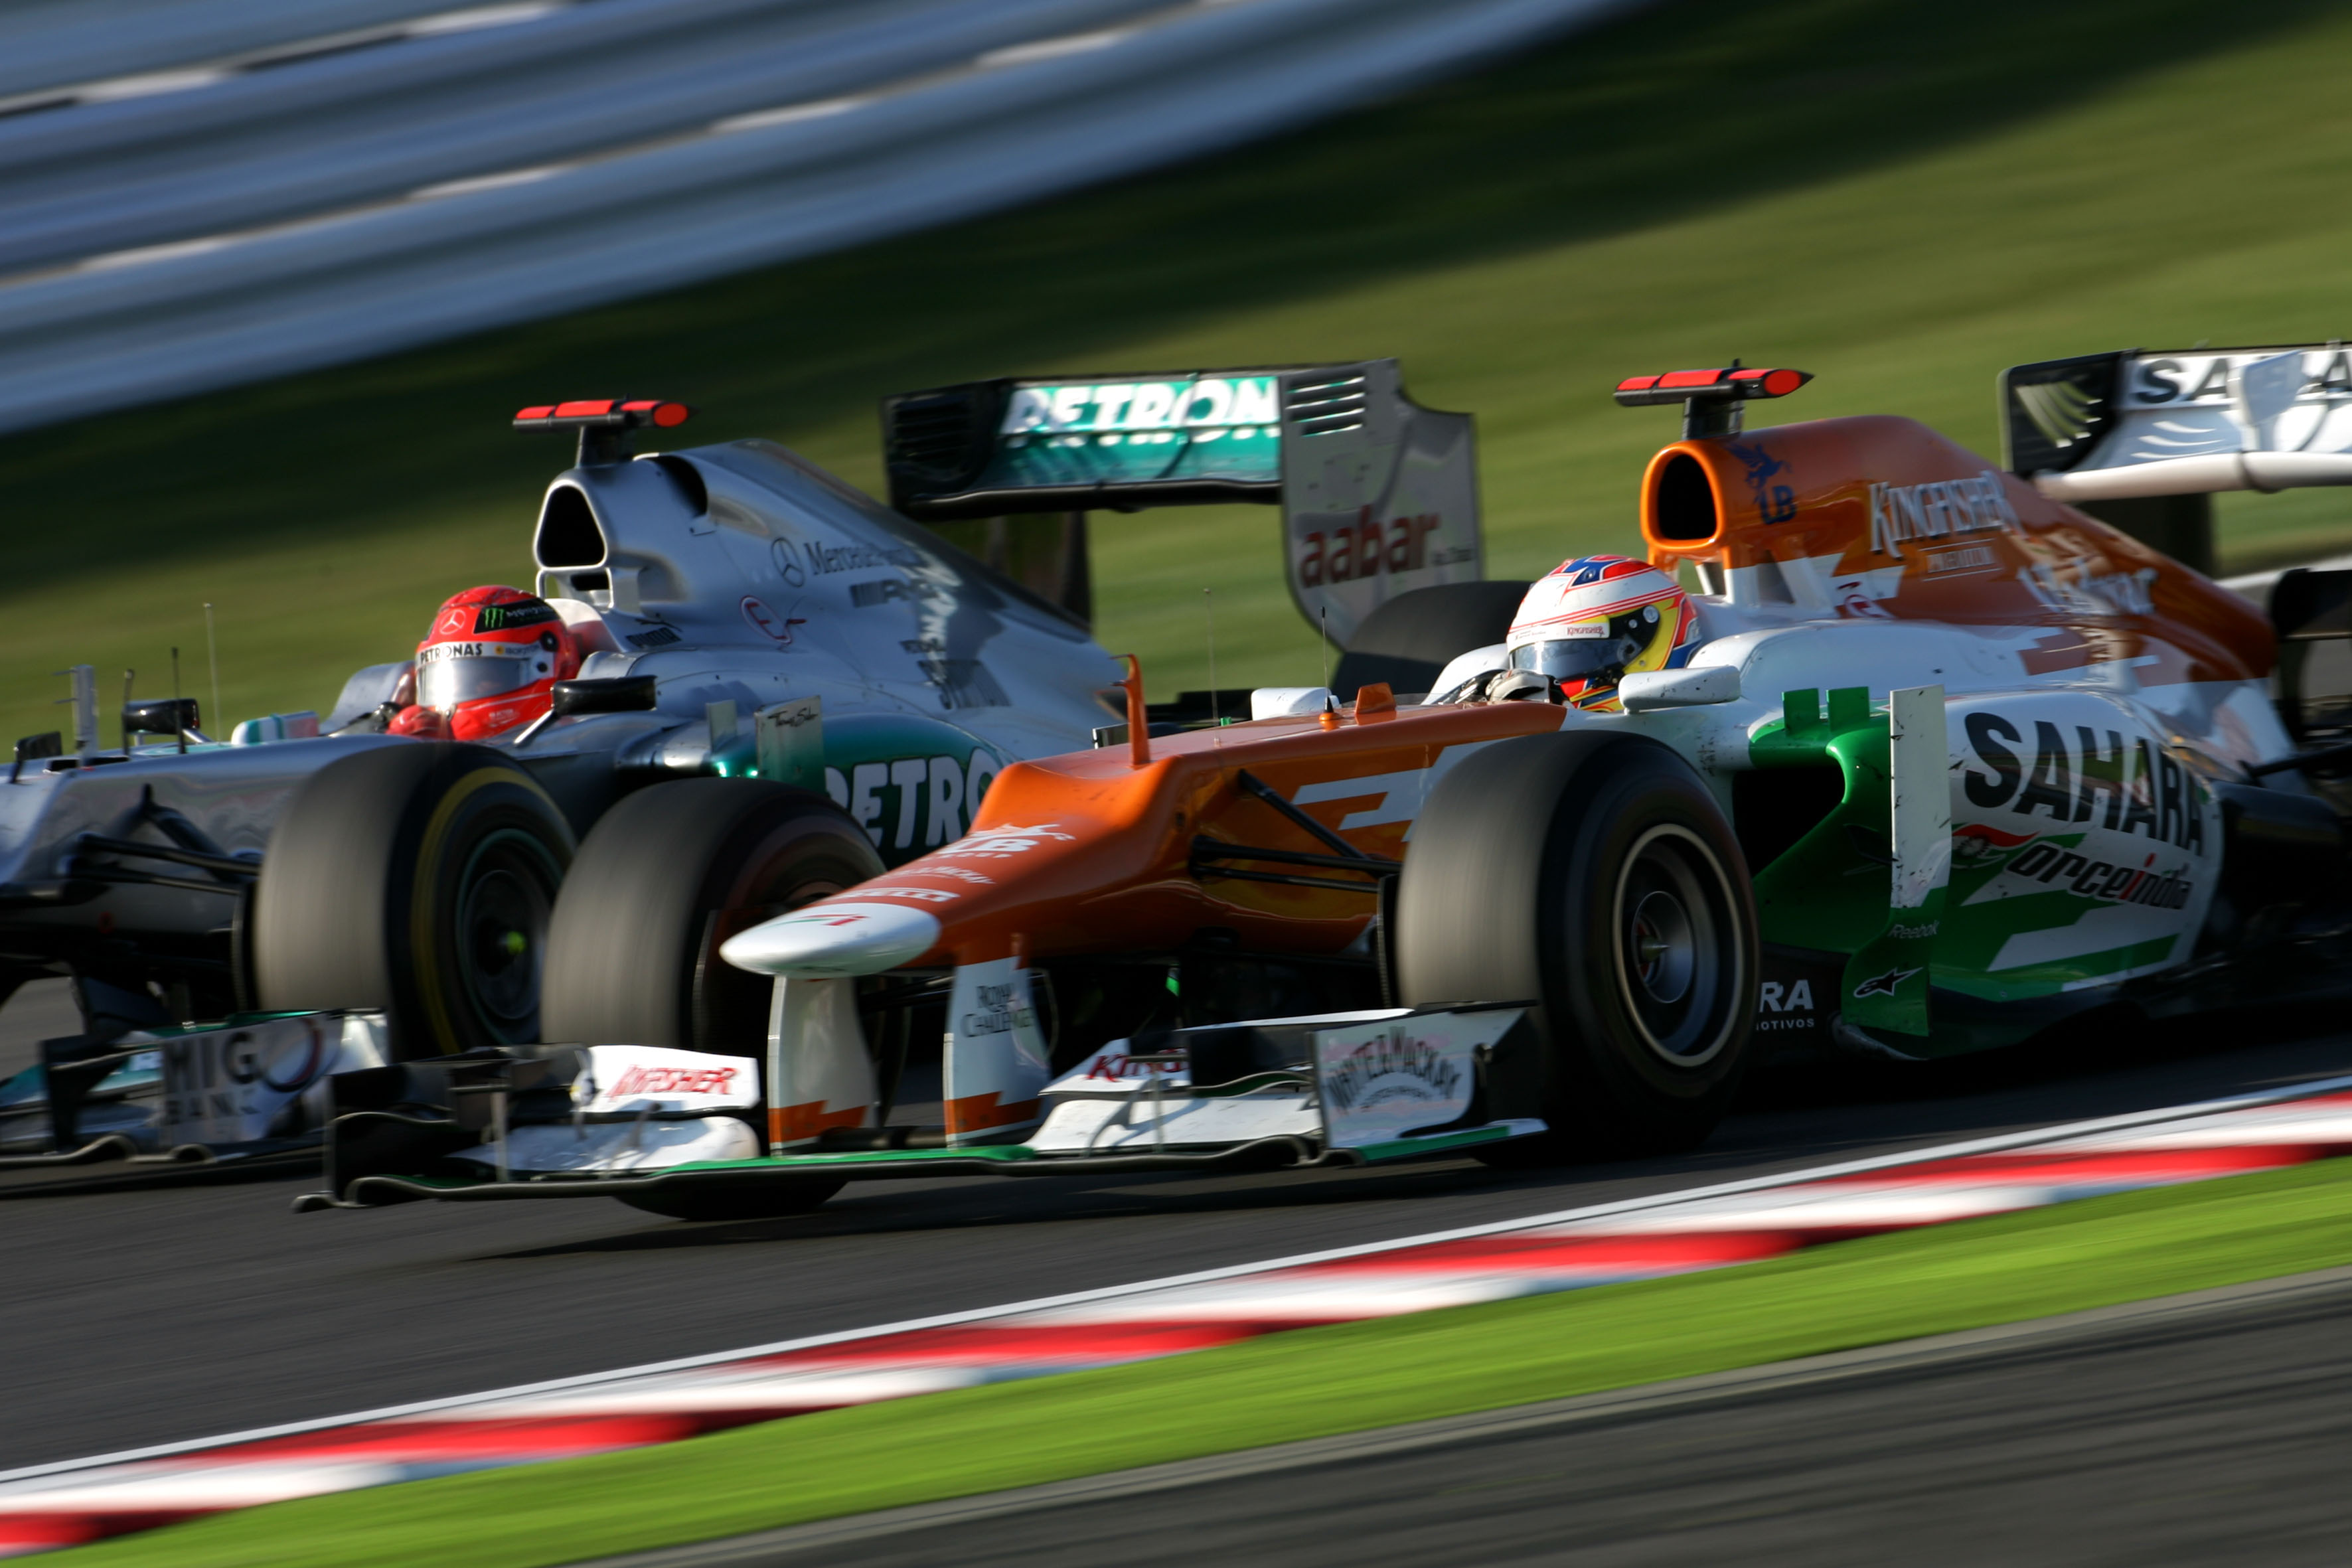 Michael Schumacher Mercedes Paul di Resta Force India Japanese Grand Prix 2012 Suzuka